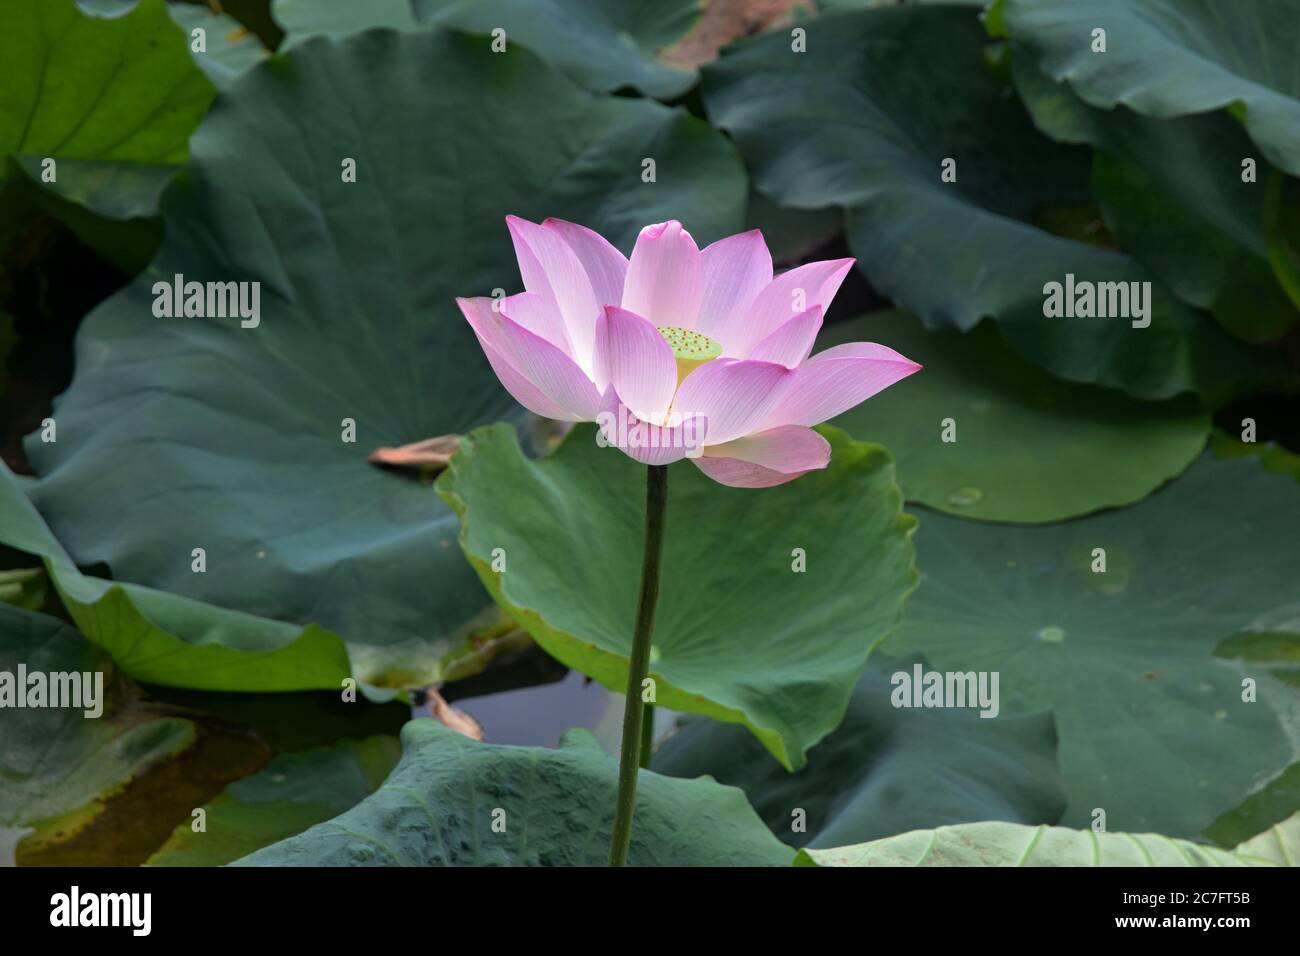 Flor de loto - símbolo de la belleza divina y la pureza. Pequeño lago cubierto de loto en plena floración. Foto de stock